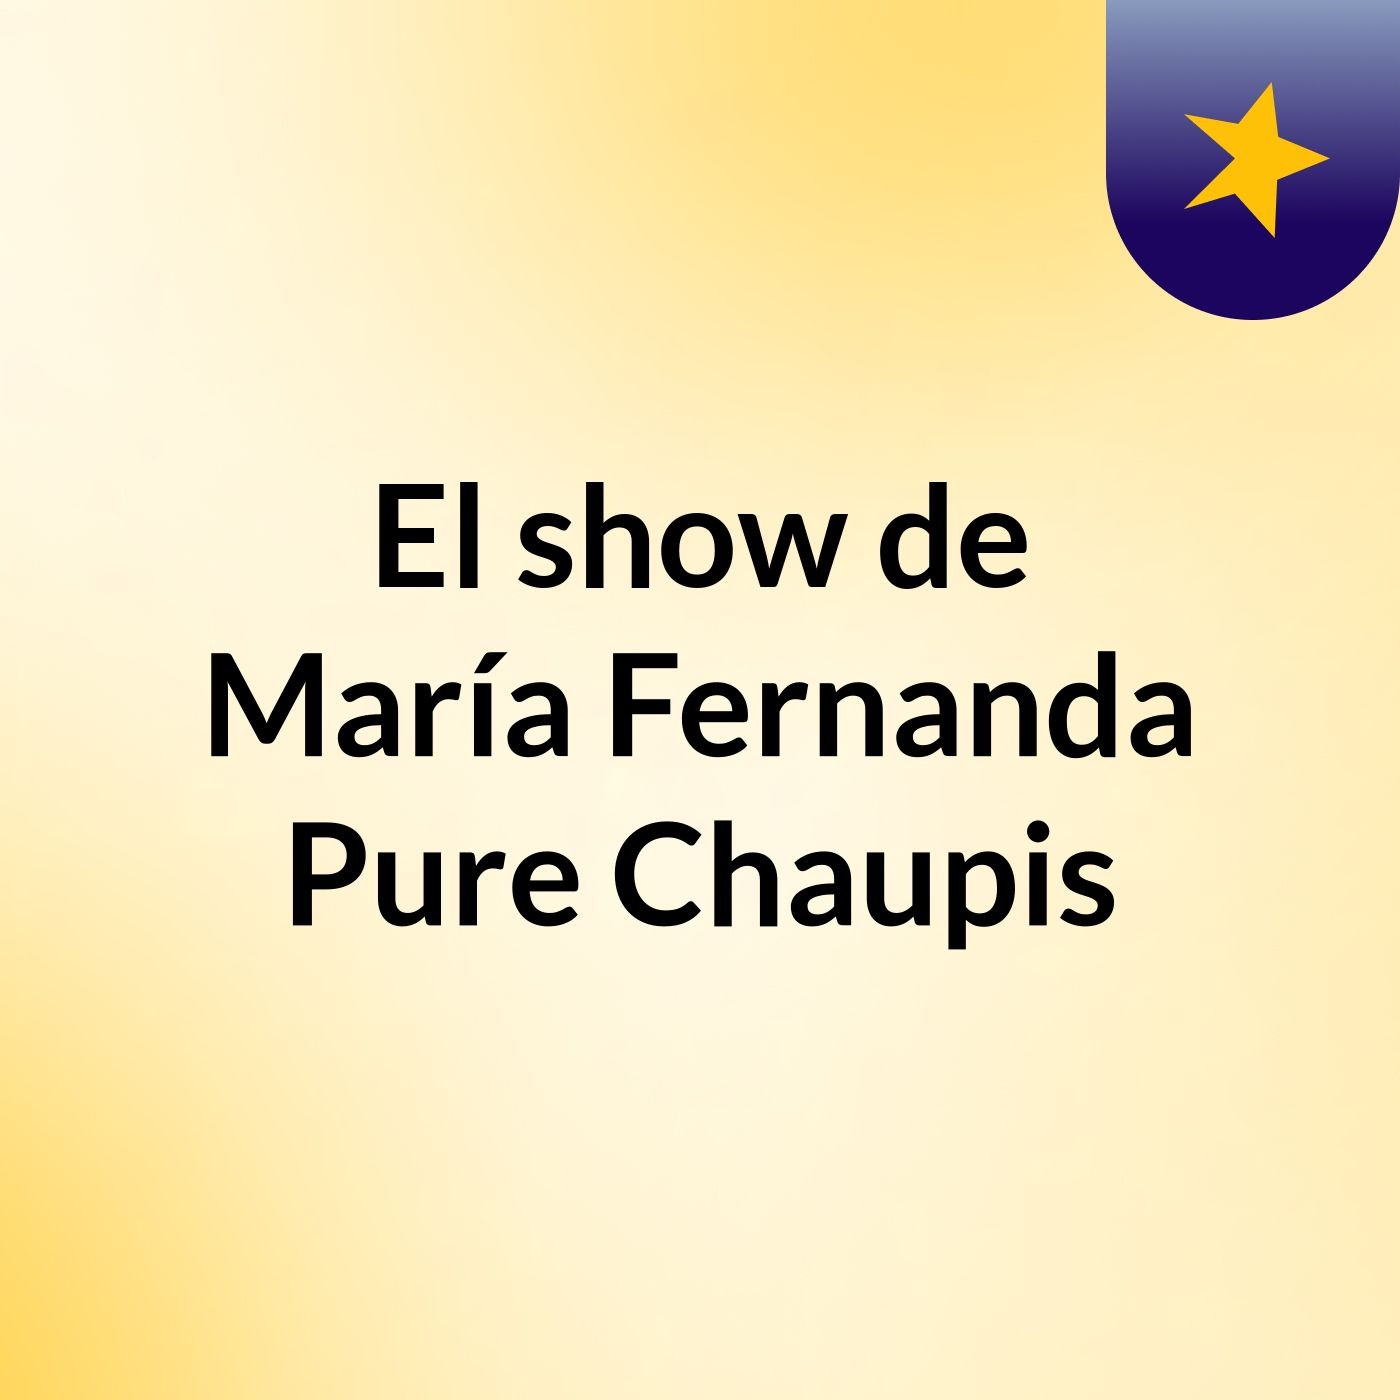 El show de María Fernanda Pure Chaupis